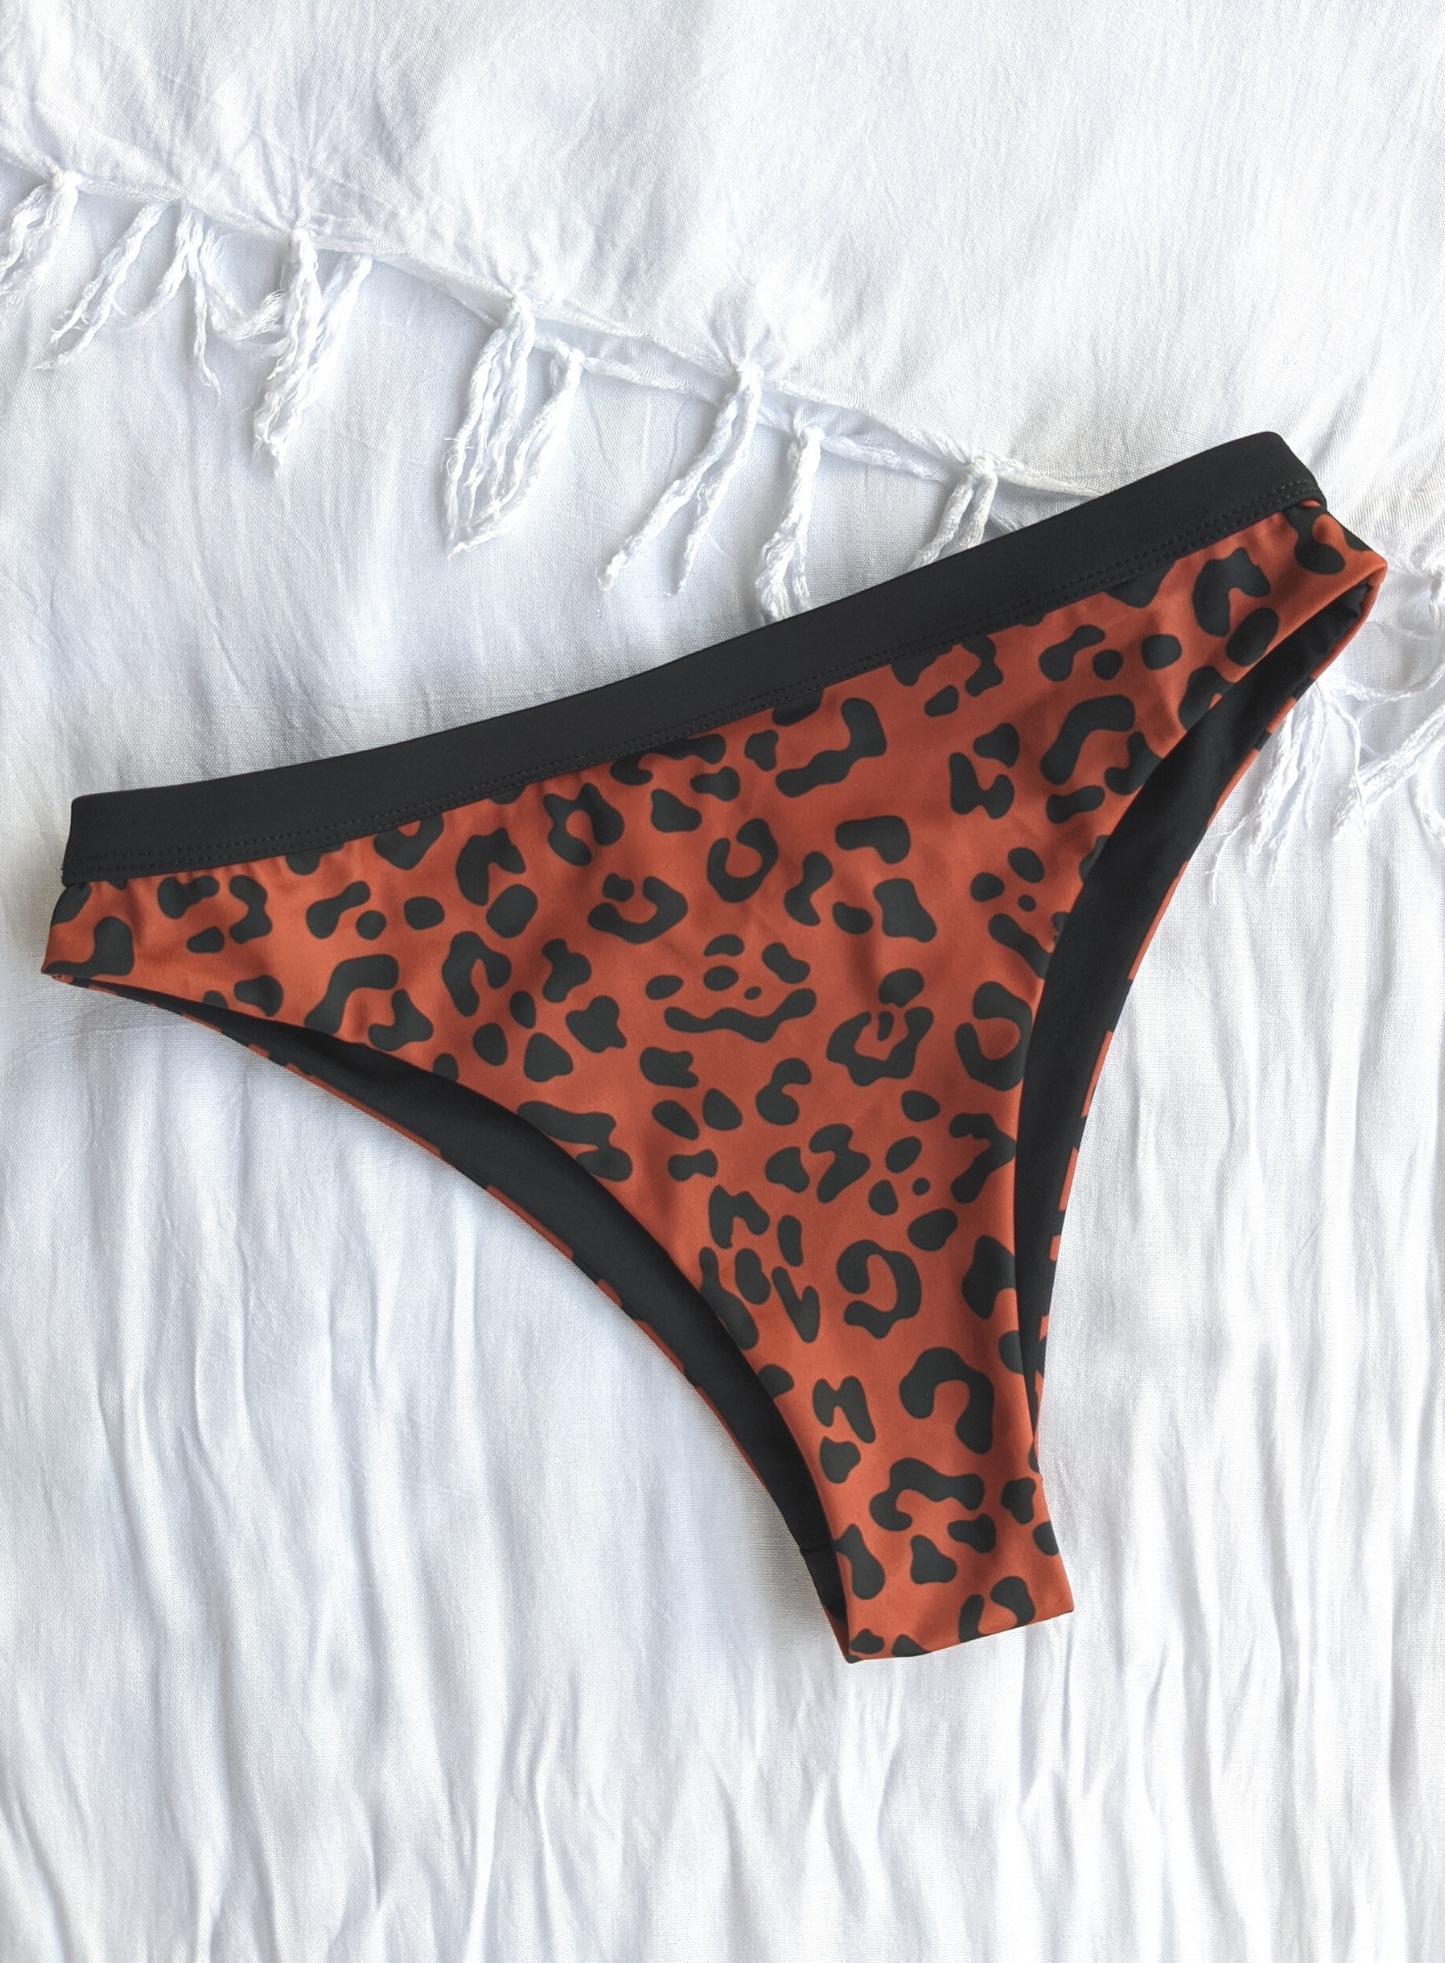 Eco Friendly Reversible Cheeky High Cut bikini In Black And Leopard Print